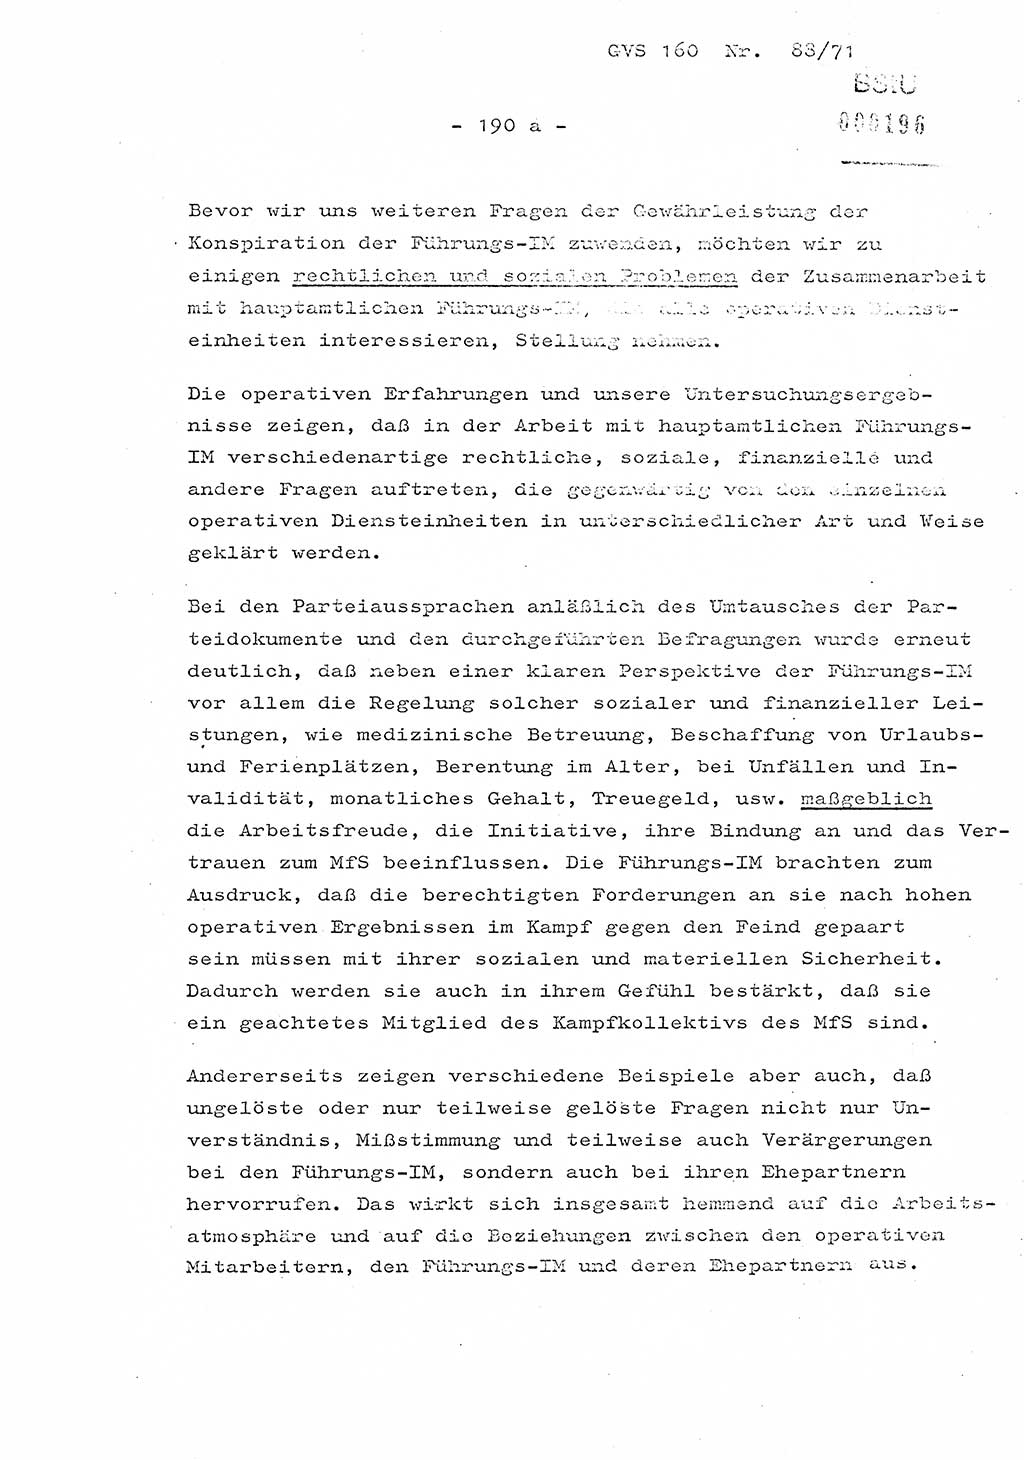 Dissertation Oberstleutnant Josef Schwarz (BV Schwerin), Major Fritz Amm (JHS), Hauptmann Peter Gräßler (JHS), Ministerium für Staatssicherheit (MfS) [Deutsche Demokratische Republik (DDR)], Juristische Hochschule (JHS), Geheime Verschlußsache (GVS) 160-88/71, Potsdam 1972, Seite 190/1 (Diss. MfS DDR JHS GVS 160-88/71 1972, S. 190/1)